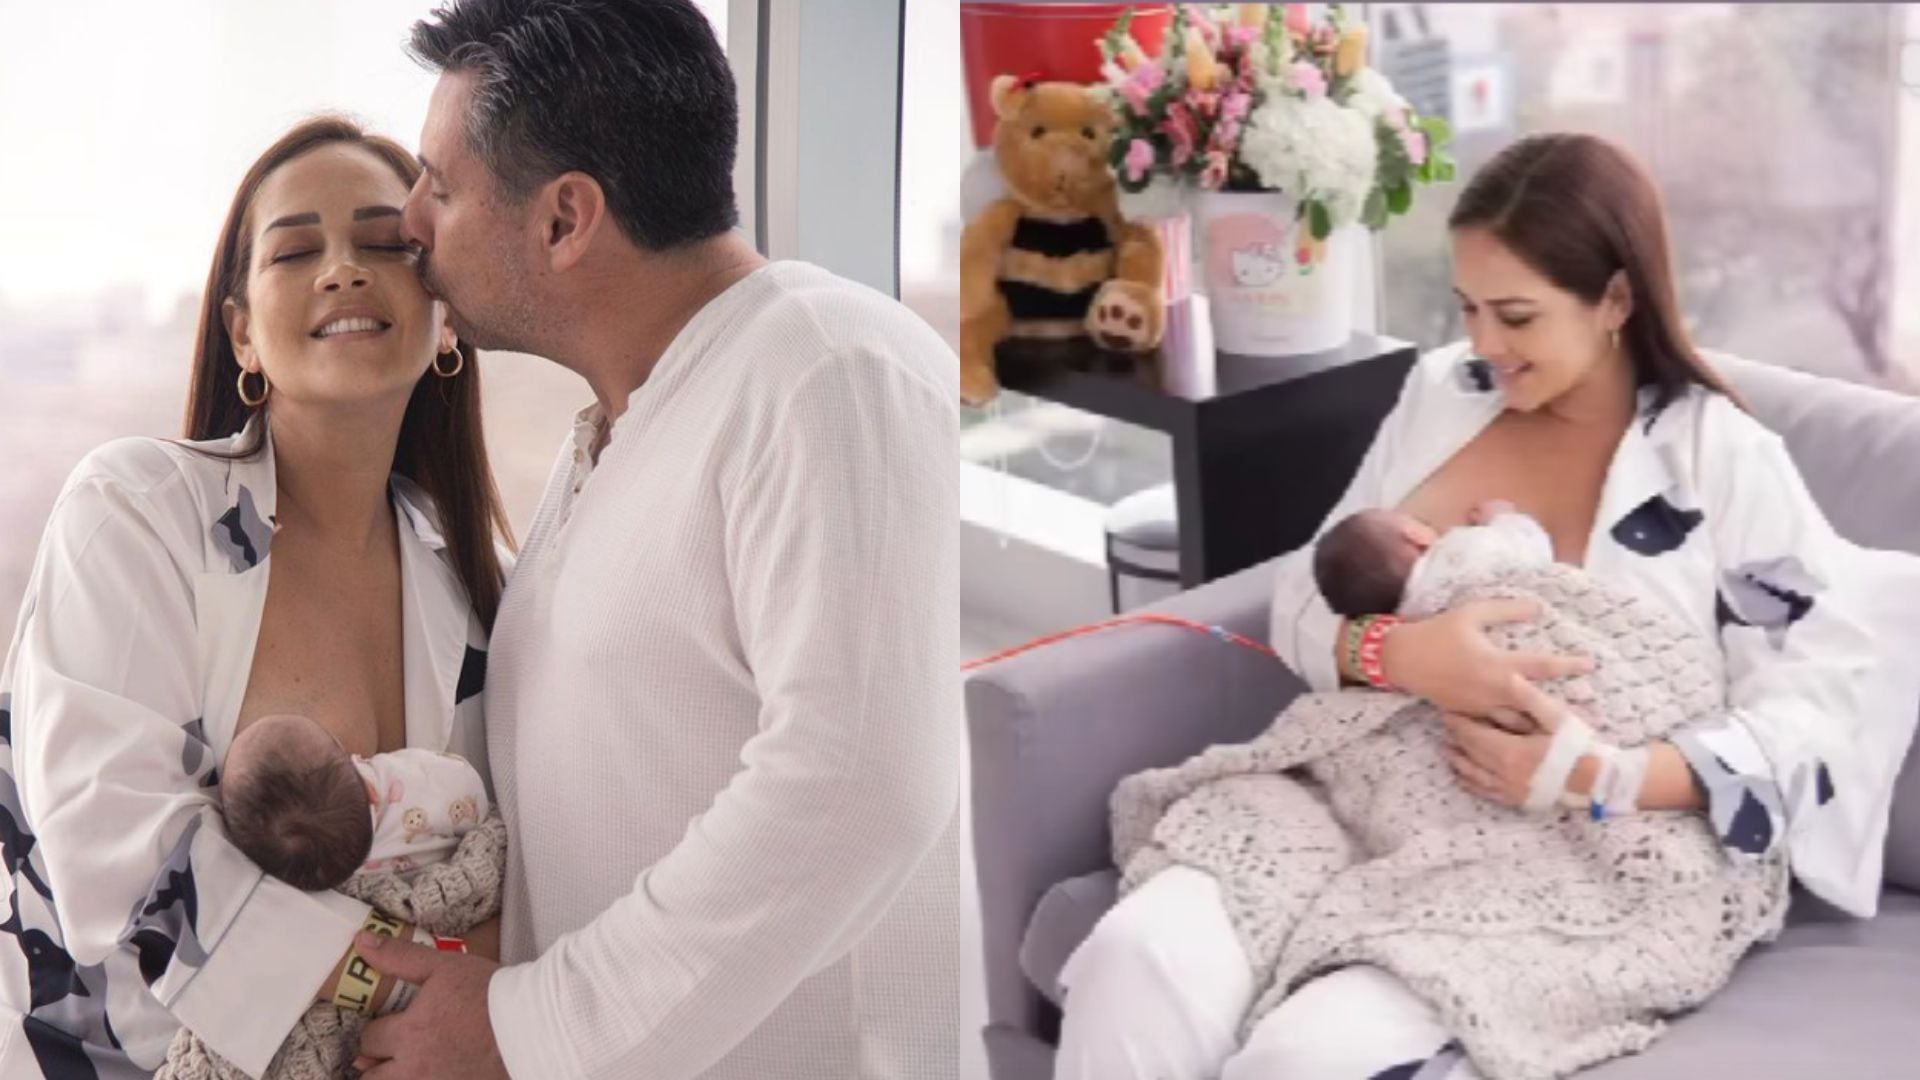 Marina Mora y su esposo disfrutan de su bebé. Instagram